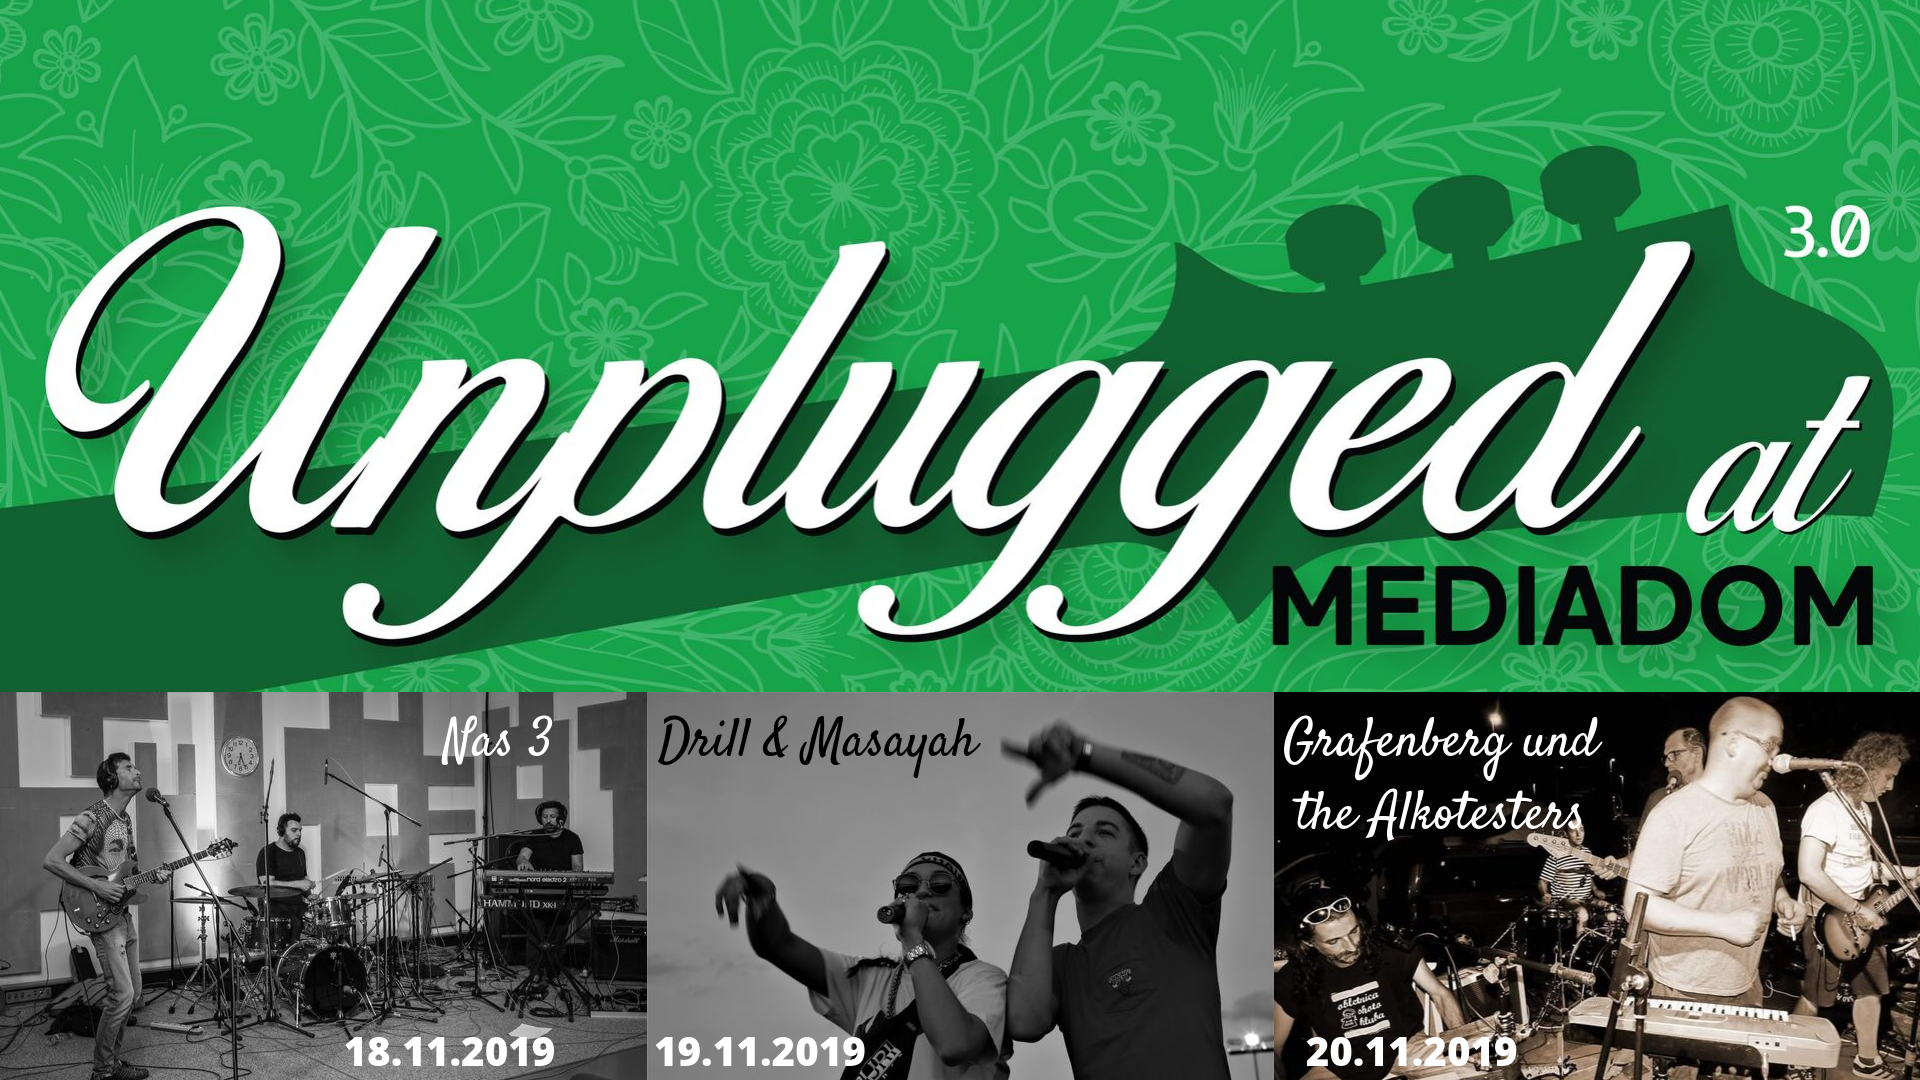 Unplugged at Mediadom tudi tretjič – sklop akustičnih koncertov obalnih glasbenikov